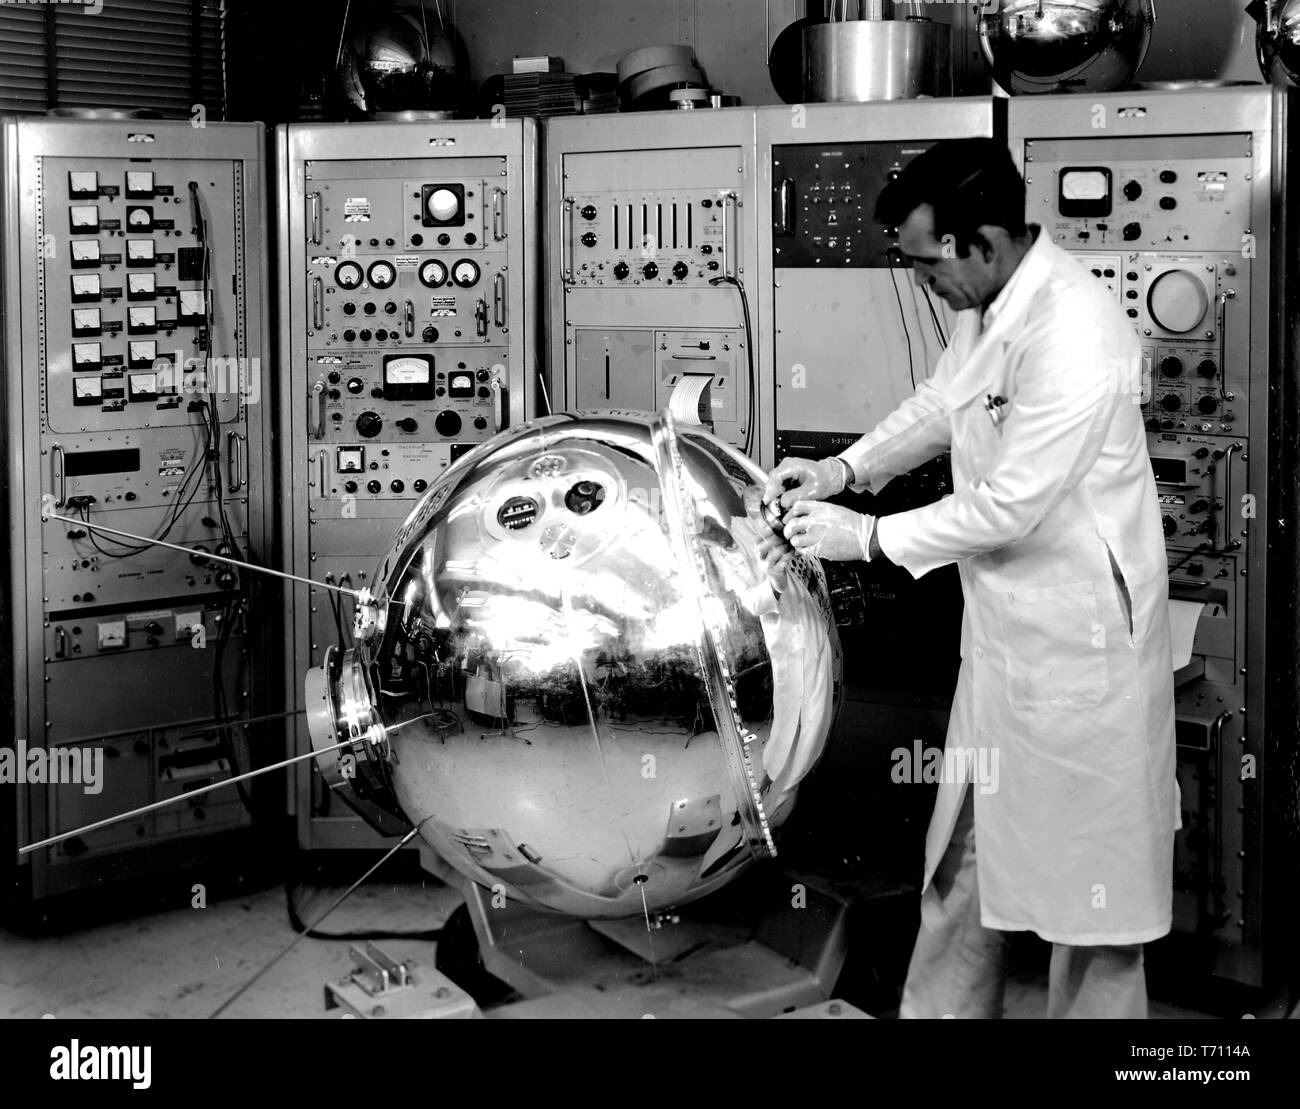 La préparation de l'ingénieur de la NASA Explorer XVII satellite pour lancer à partir de Cap Canaveral, Floride, 1963. Droit avec la permission de la National Aeronautics and Space Administration (NASA). () Banque D'Images